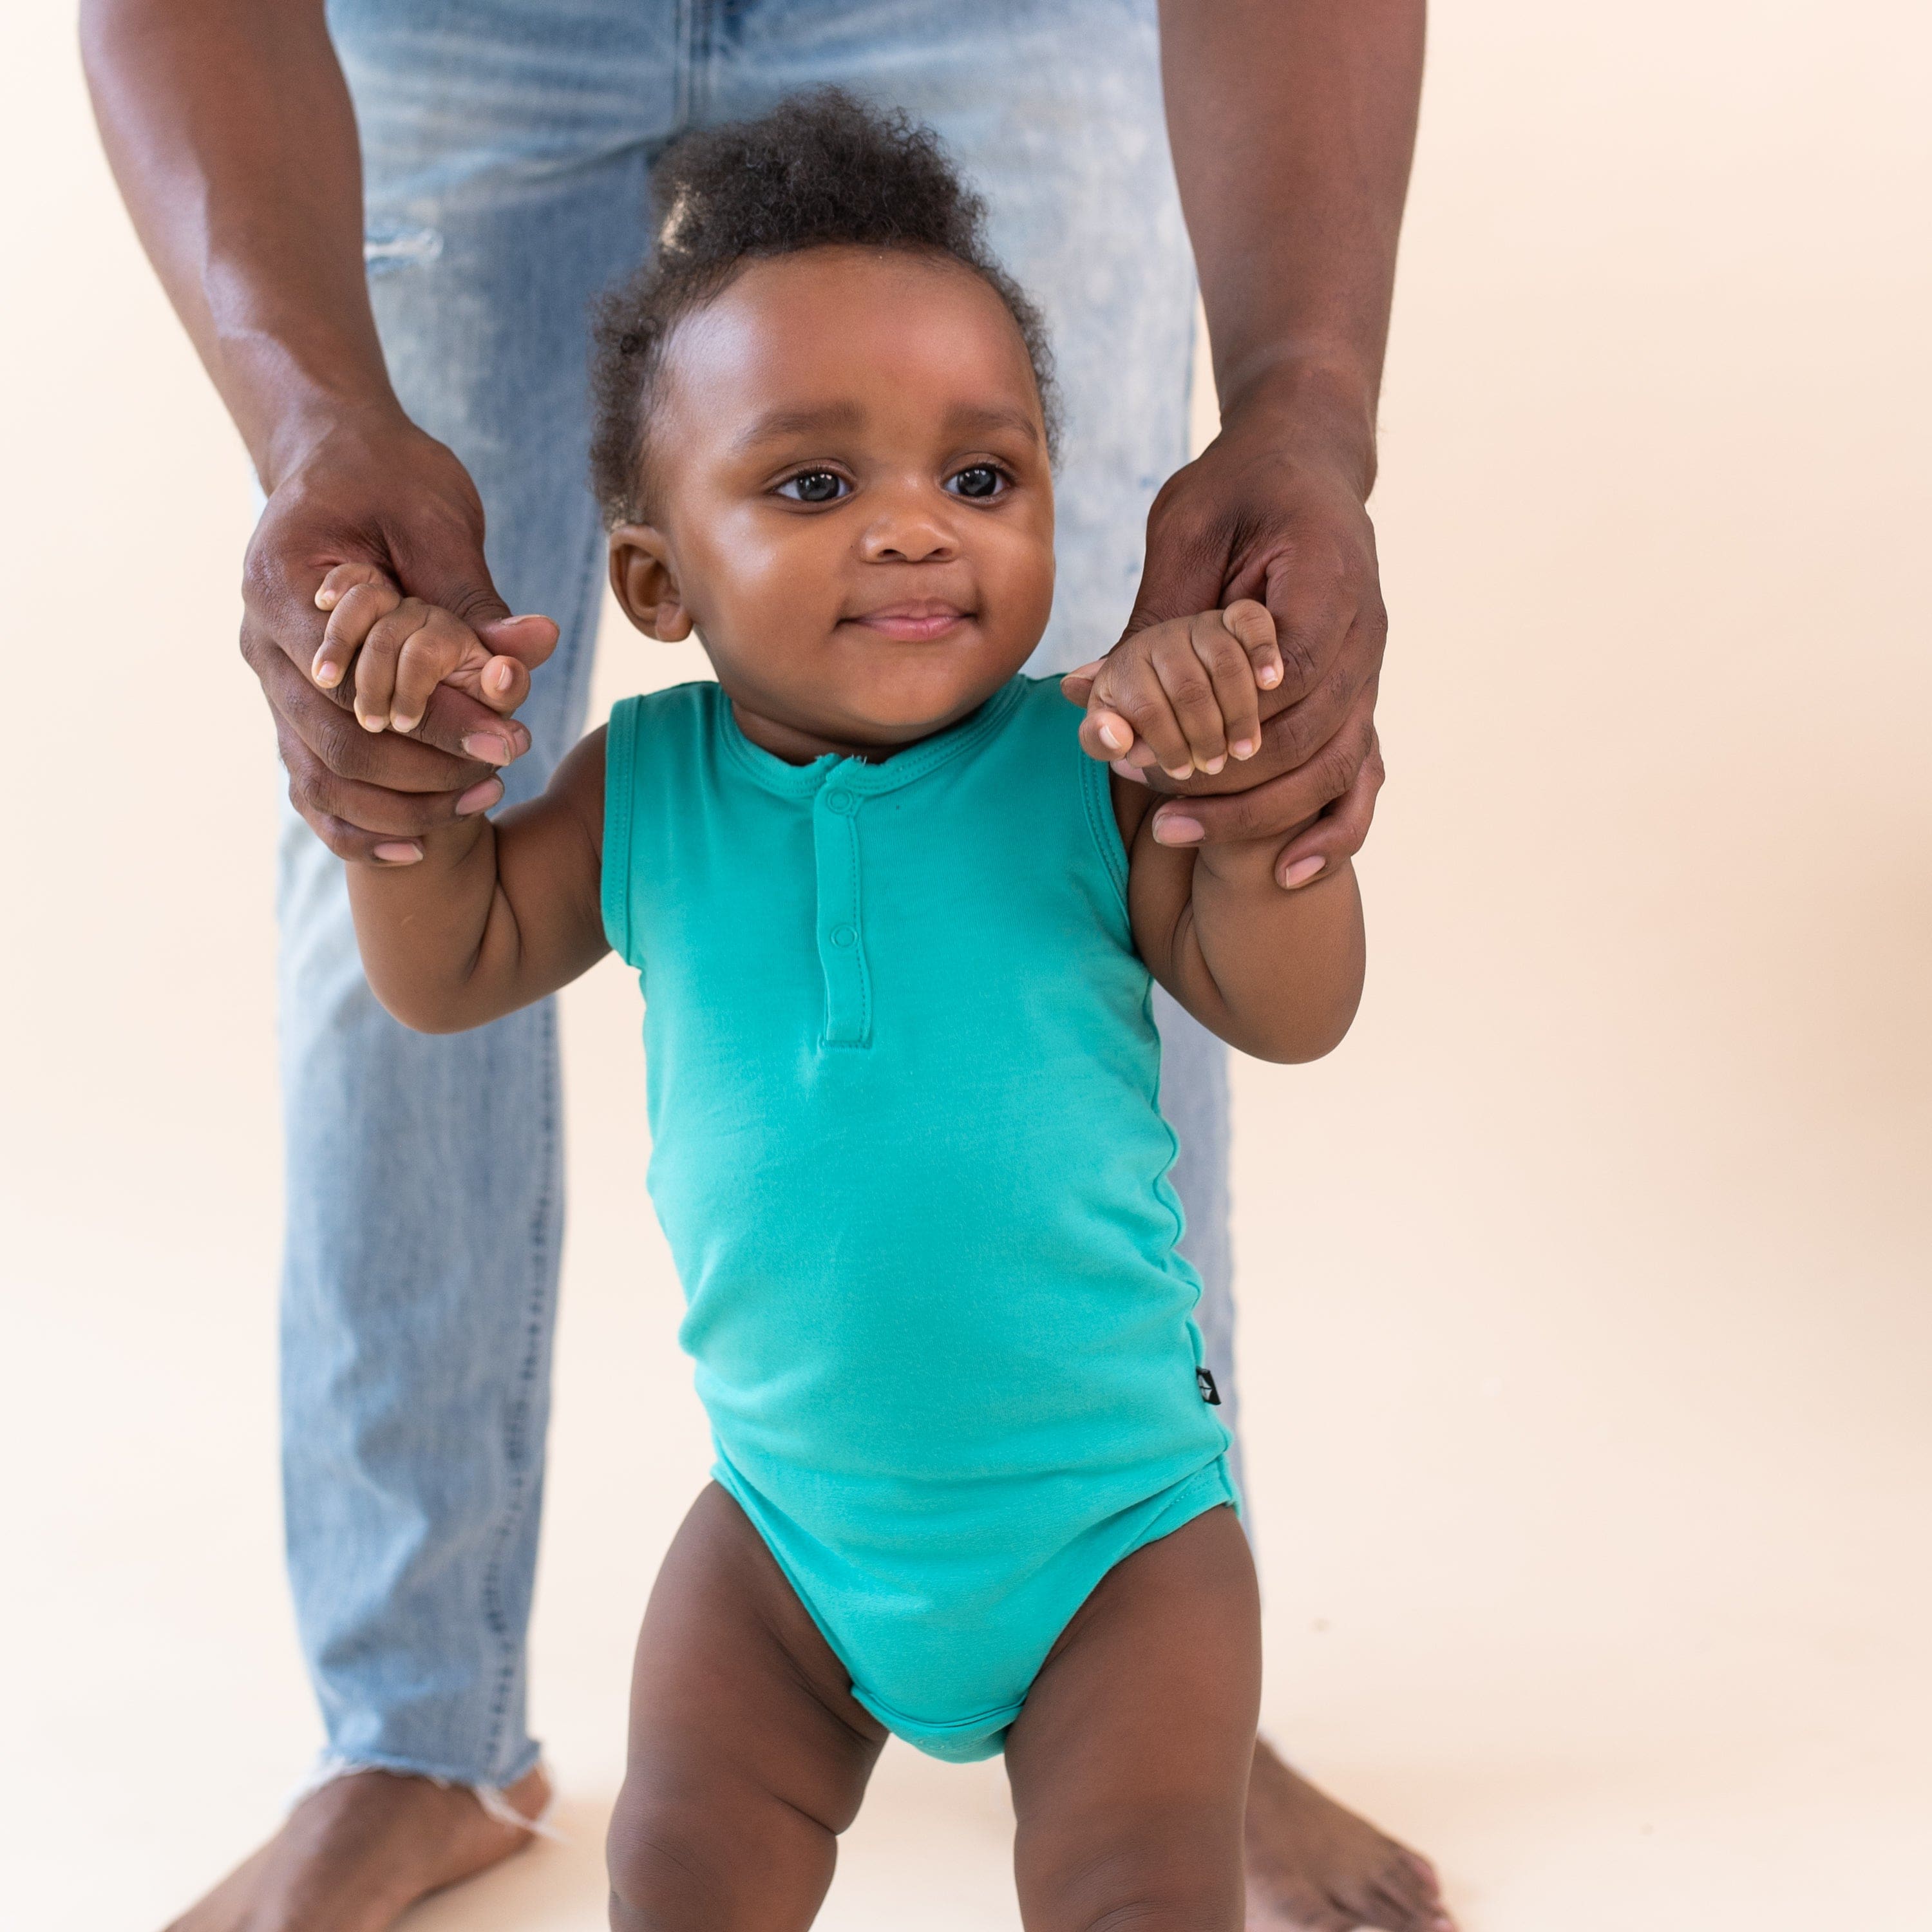 Kyte Baby Sleeveless Bodysuits Sleeveless Bodysuit in Caribbean